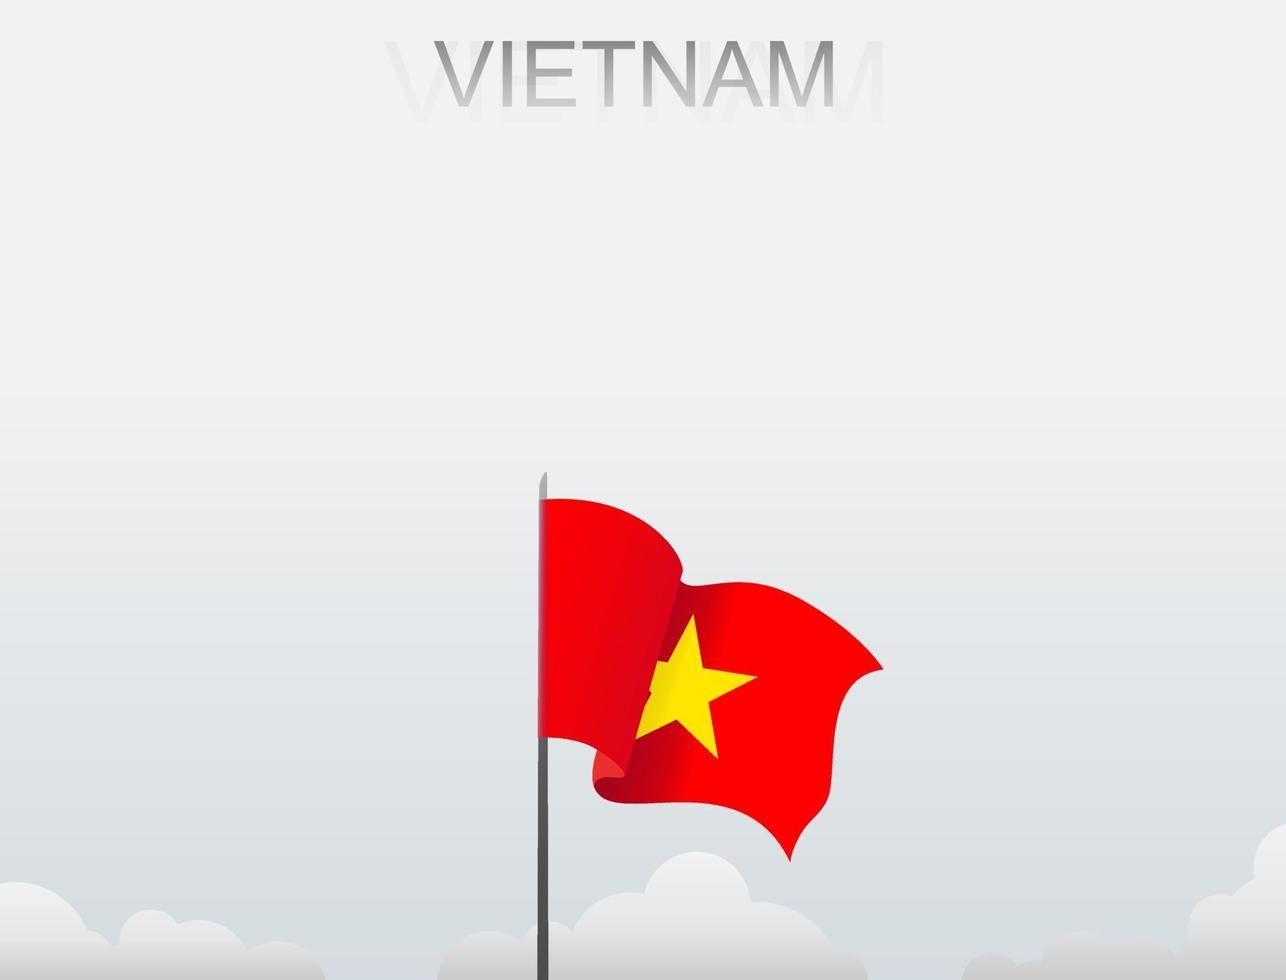 die vietnam-flagge weht an einem mast, der hoch unter dem weißen himmel steht vektor